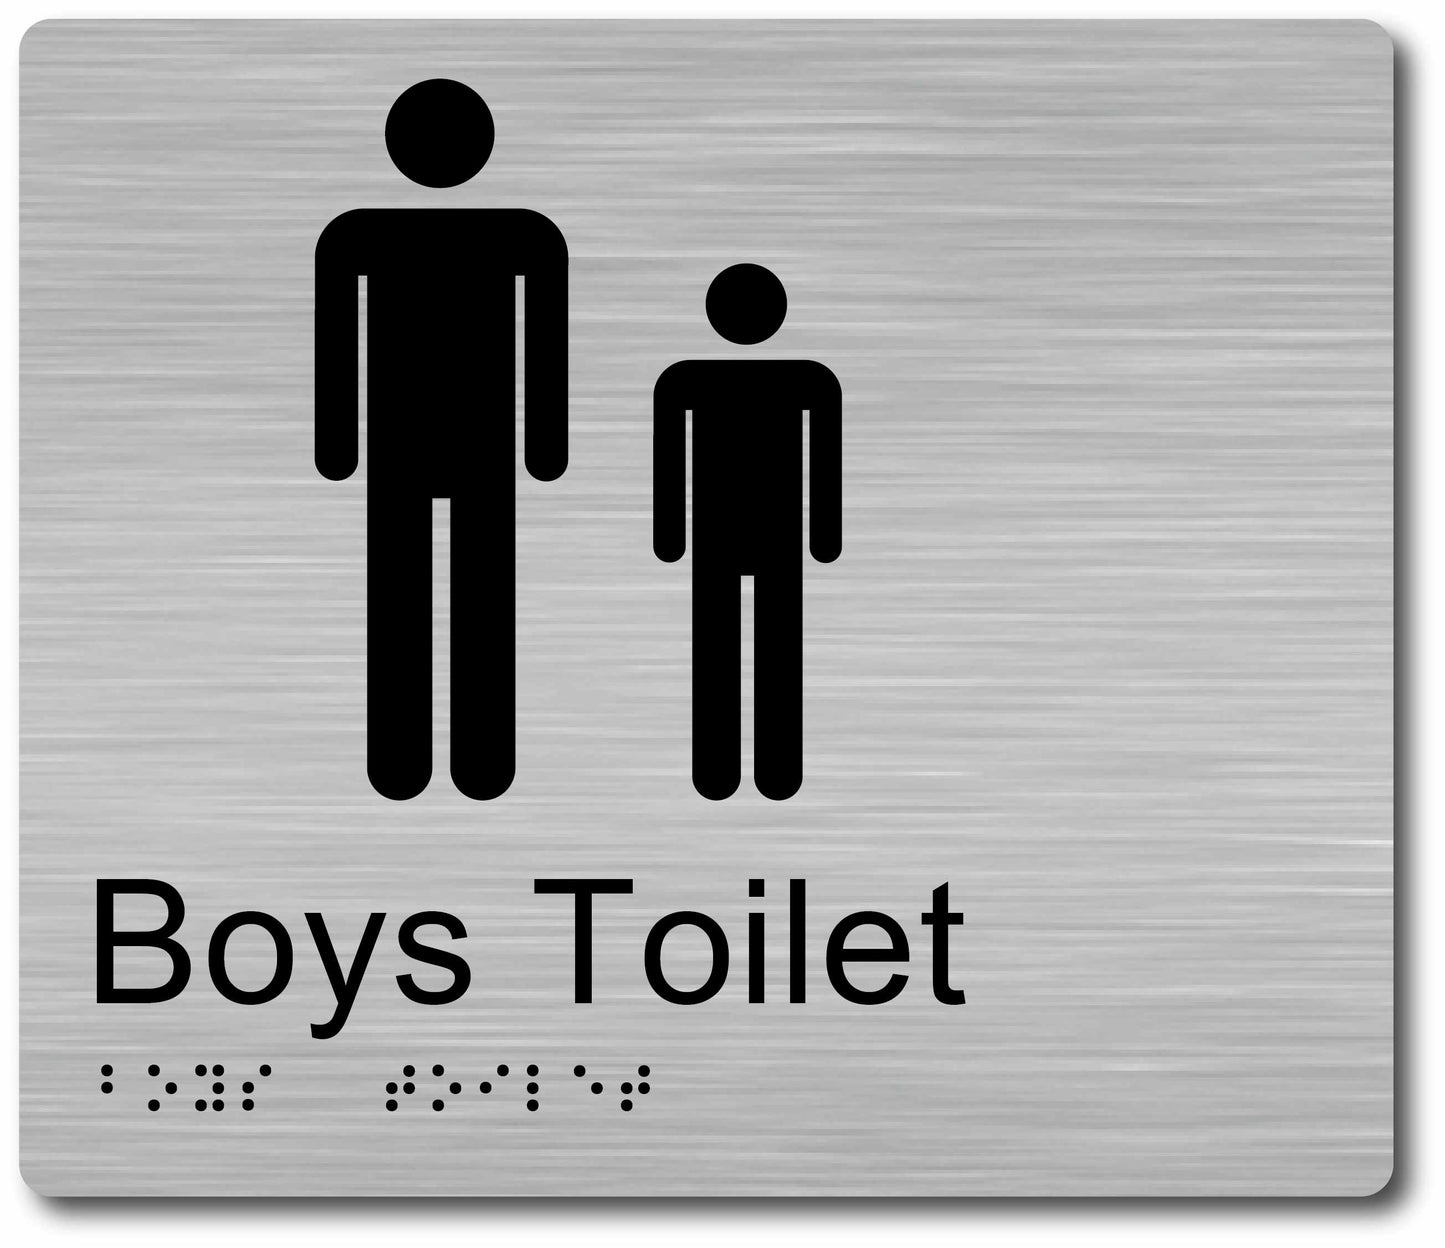 Boys Toilet